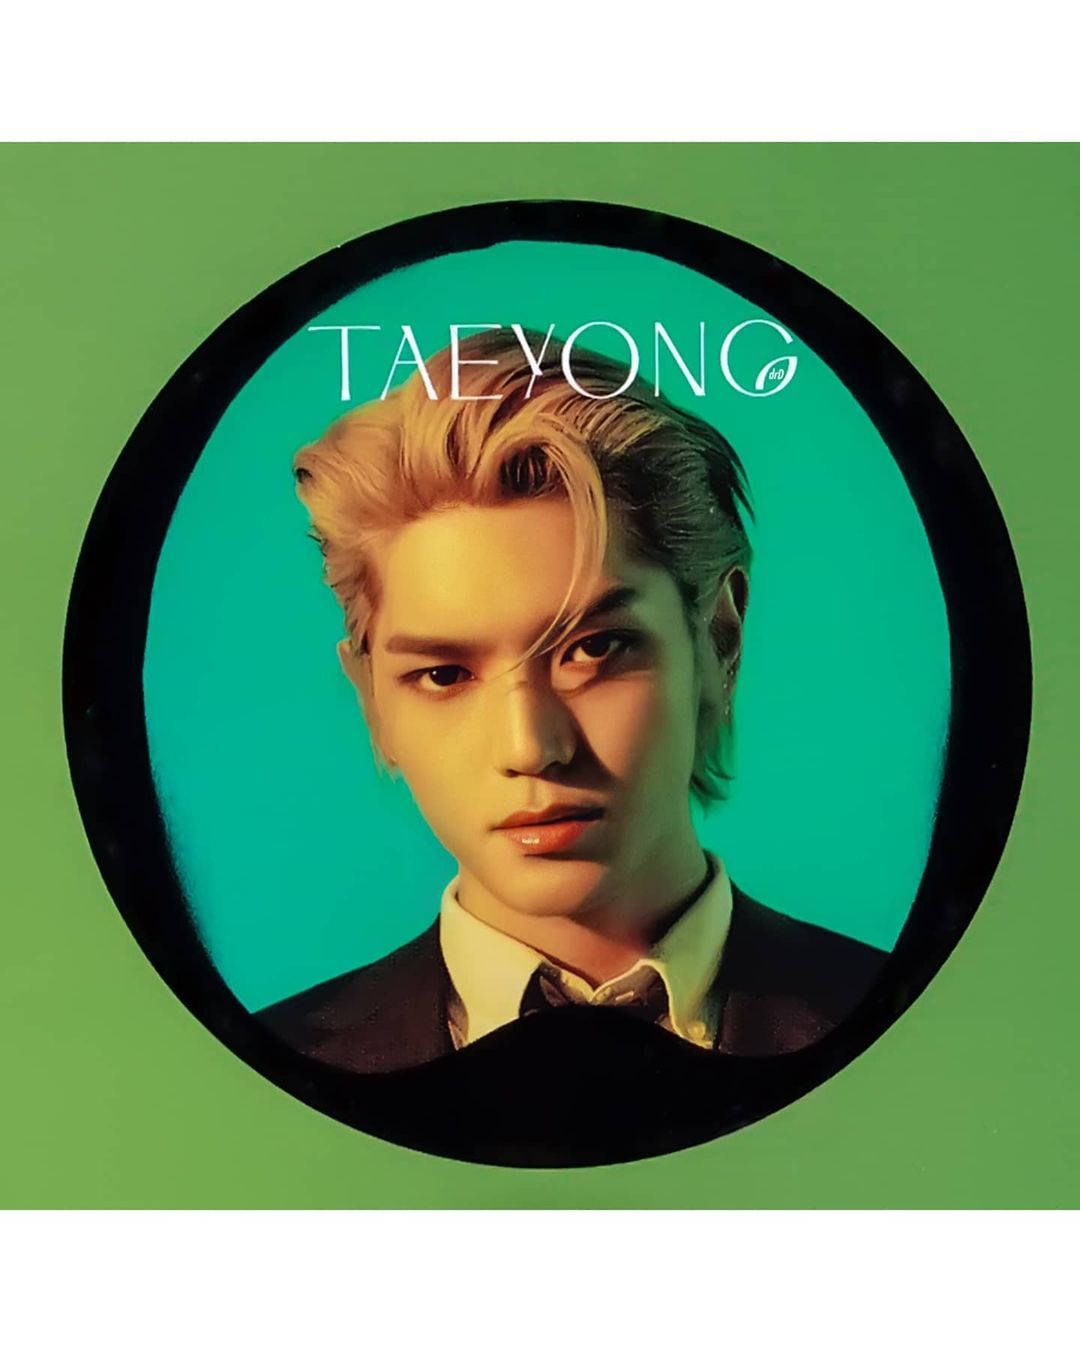 15. Taeyong - певец